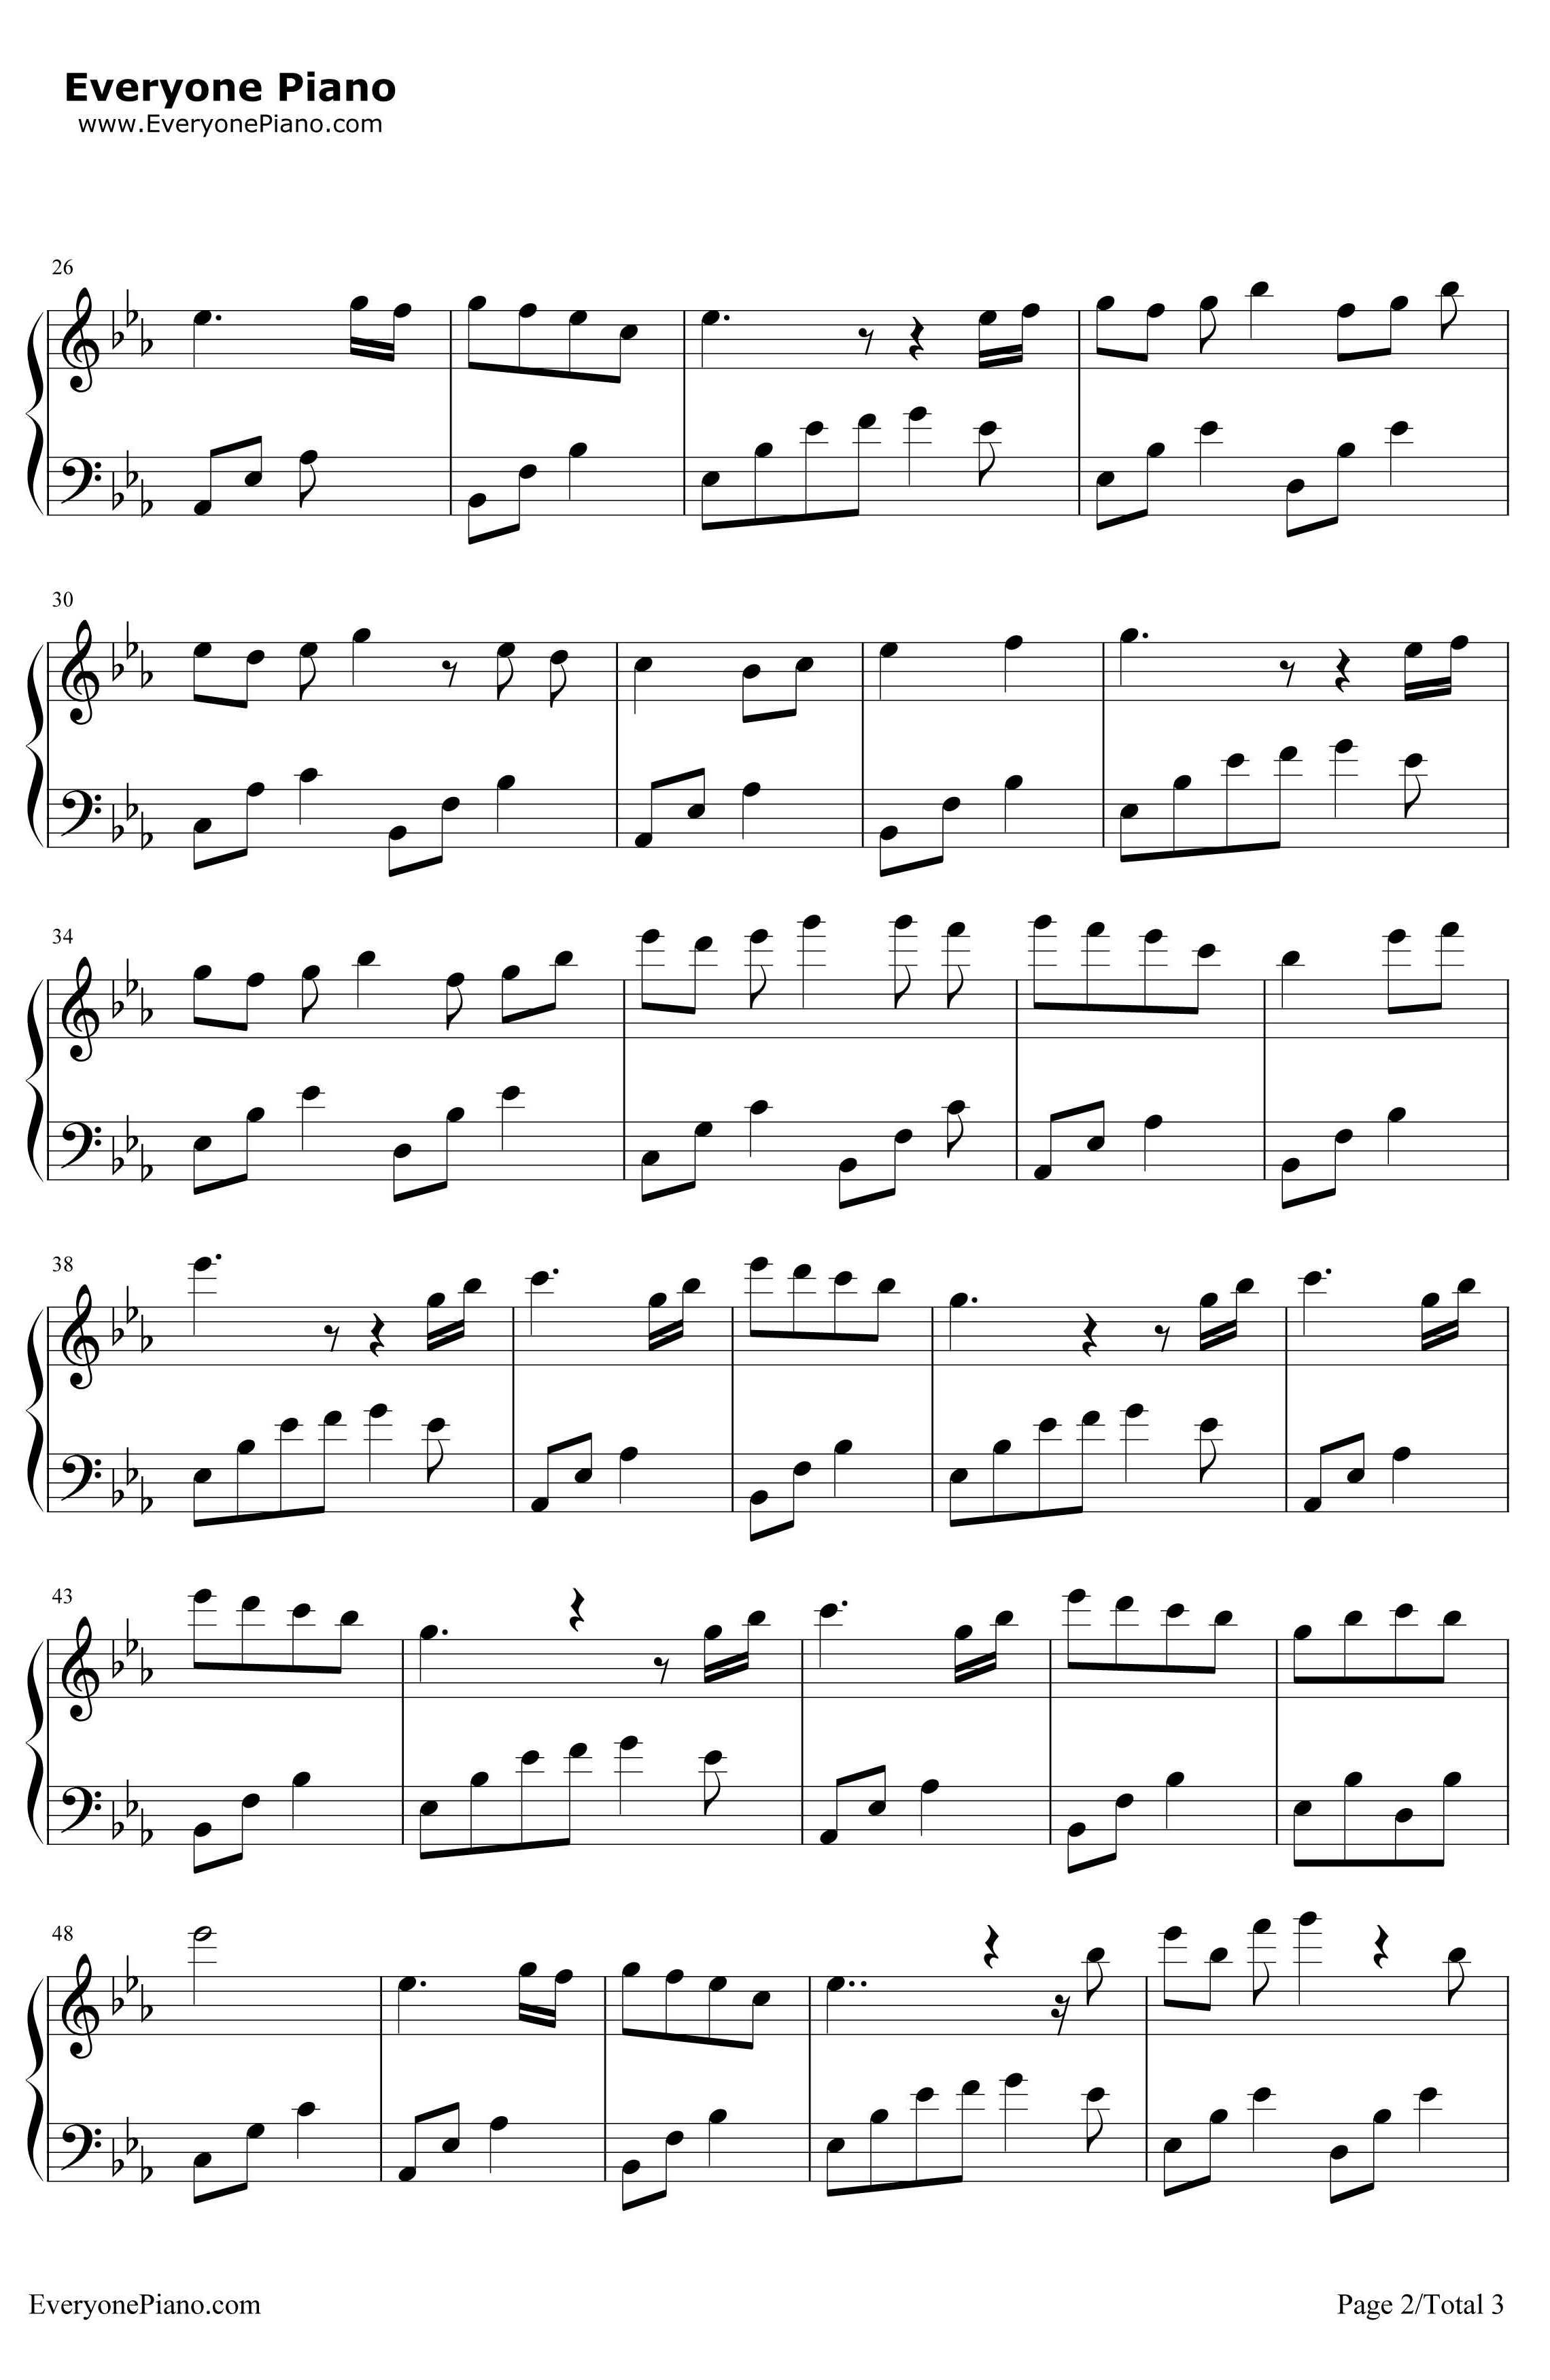 夜的钢琴曲15钢琴谱-石进-夜的钢琴曲152